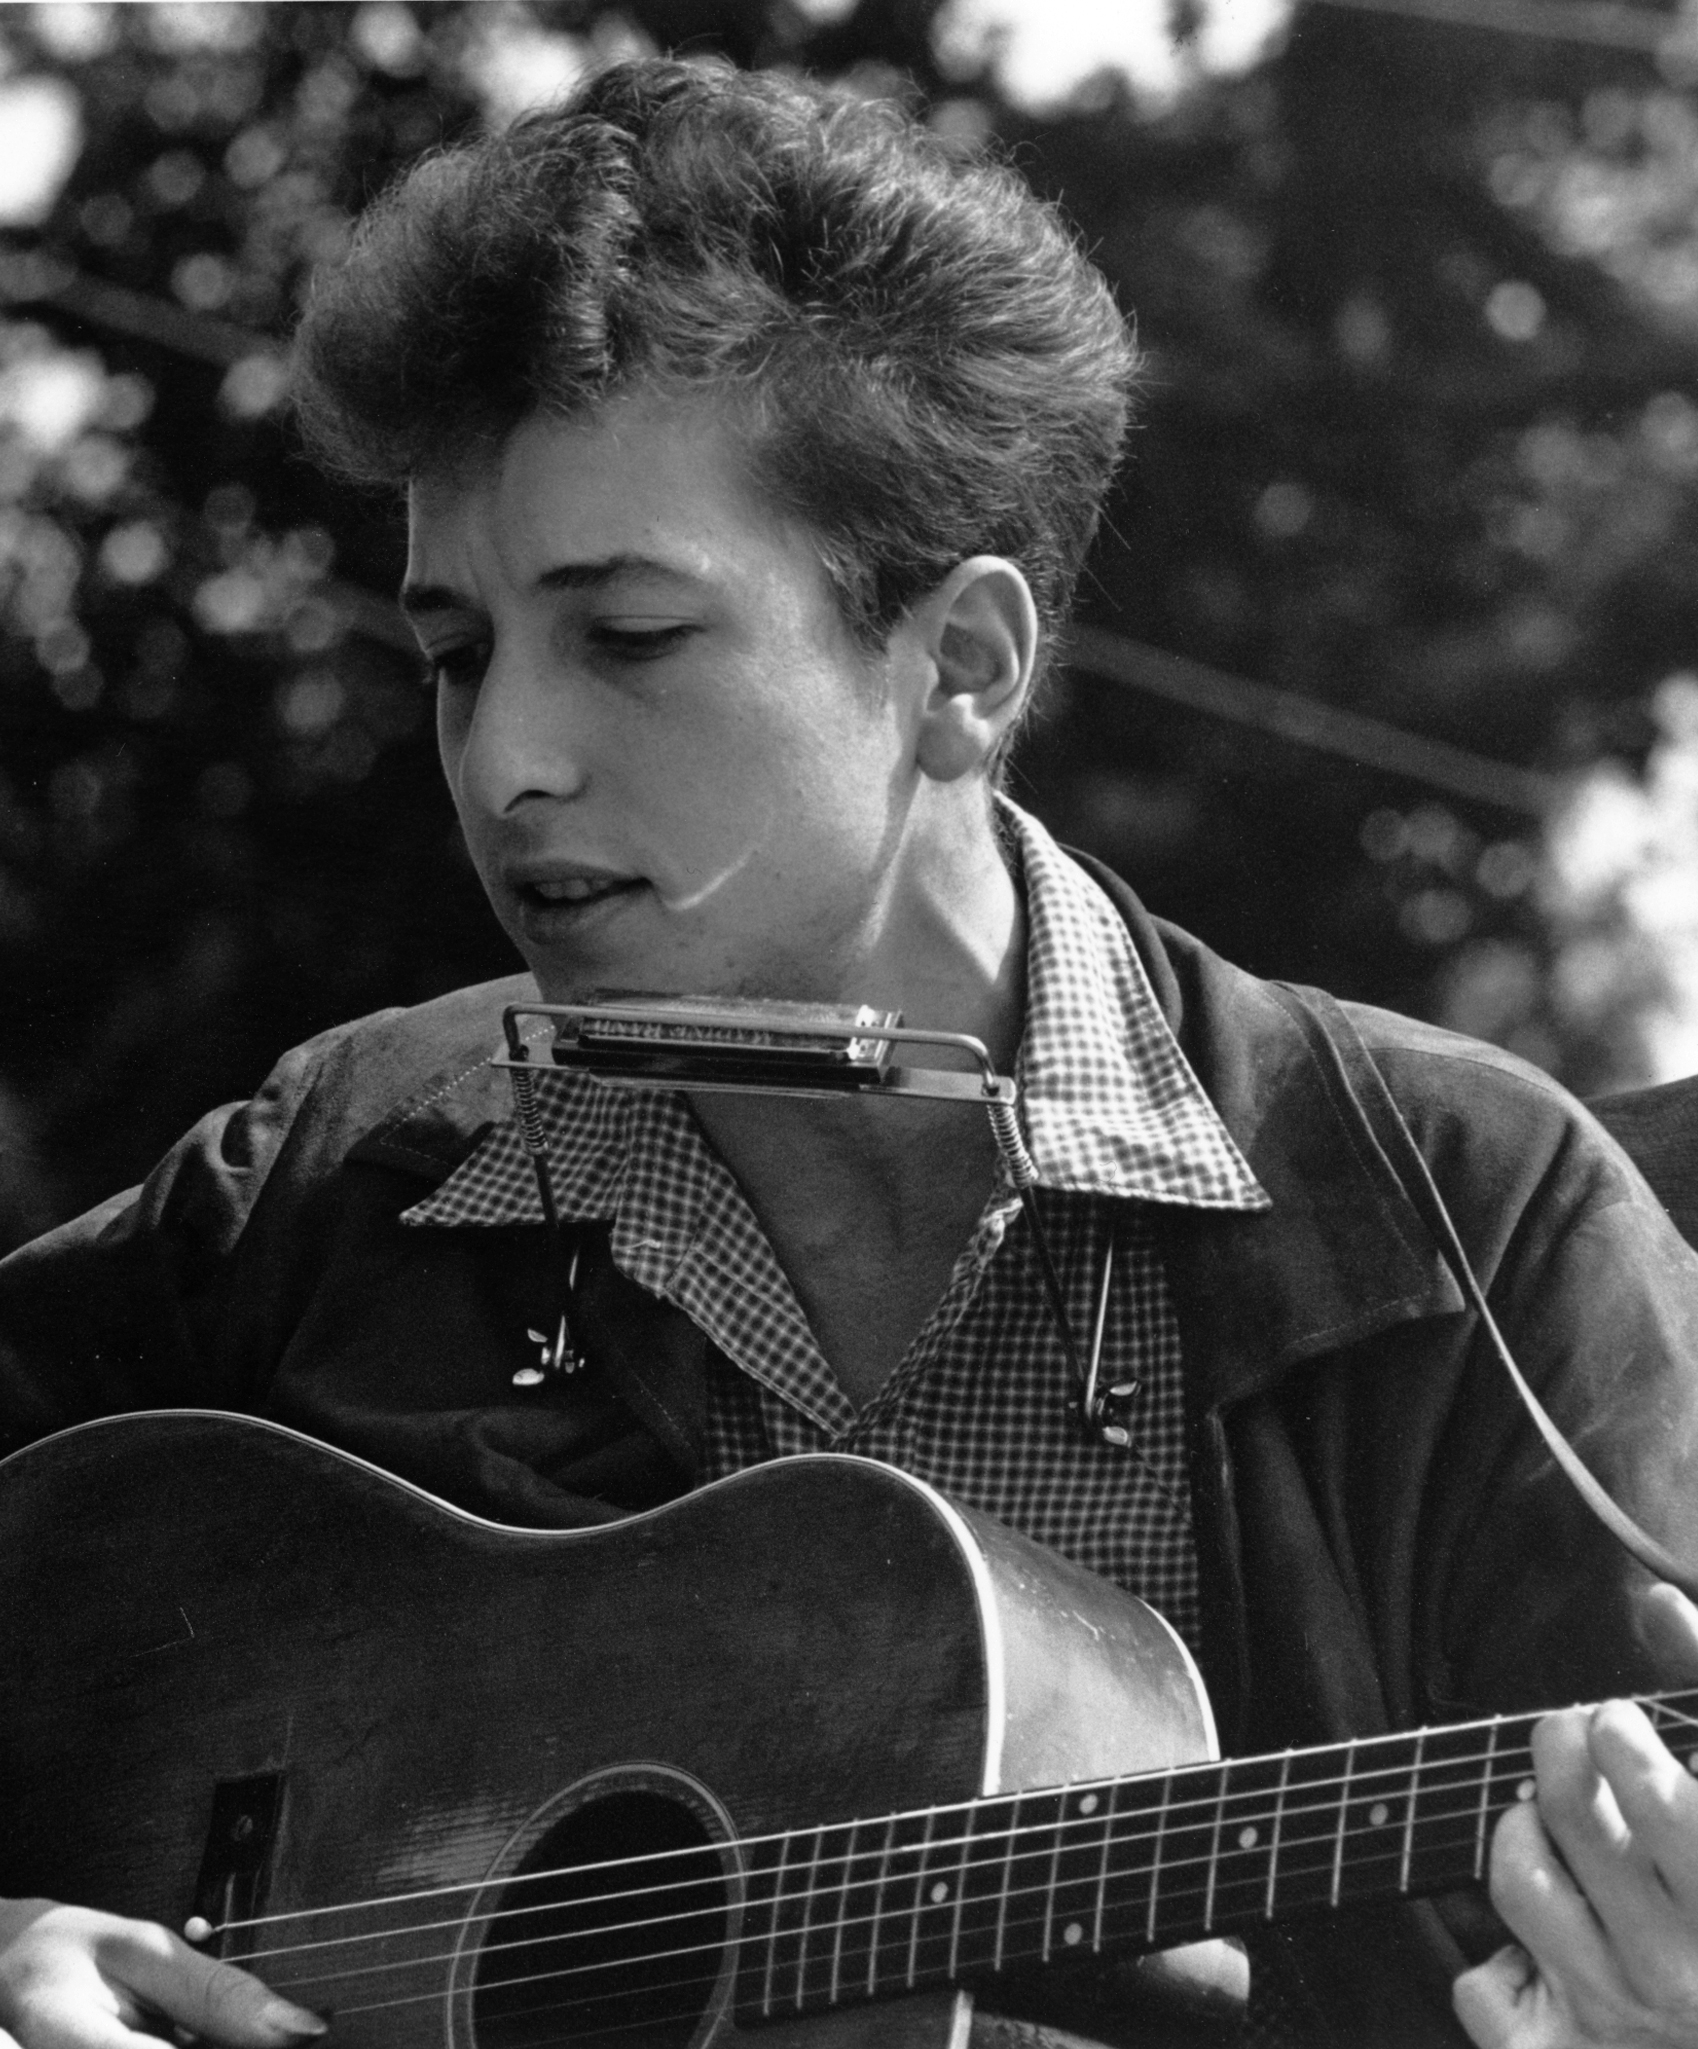 auteur Bob Dylan de la citation Les flammes cramoisies ont attaché mes oreilles en randonnée et de puissants pièges bondaient avec le feu sur des routes enflammées en utilisant des idées comme mes cartes "Nous nous rencontrerons bientôt sur les bords", a déclaré que je suis fier de Neath Hiled Brow. Ah, mais j'étais tellement plus âgé alors, je suis plus jeune que ça maintenant. Les préjugés à moitié épuisés ont sauté "Rip Down All Hate", j'ai crié des mensonges que la vie est en noir et blanc parlé de mon crâne. J'ai rêvé de faits romantiques de mousquetaires fondamentaux profondément, d'une manière ou d'une autre. Ah, mais j'étais tellement plus âgé alors, je suis plus jeune que ça maintenant.